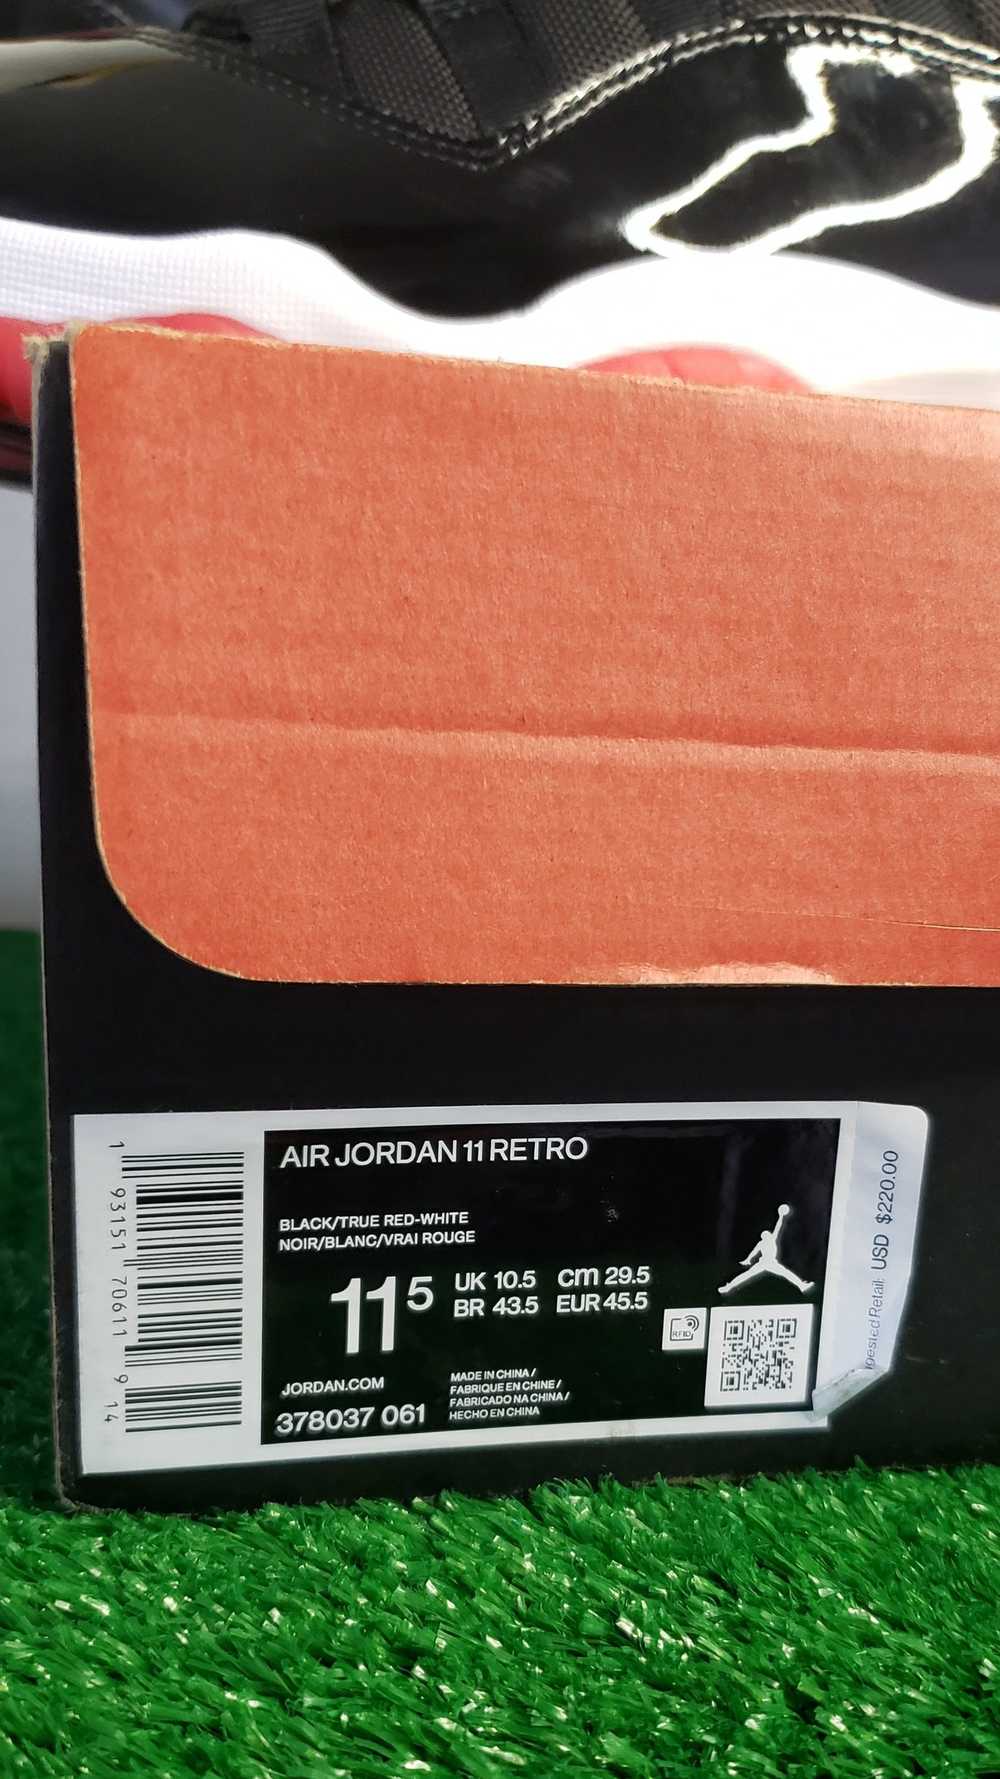 Jordan Brand Air Jordan 11 Retro "Bred" 2019 - image 8